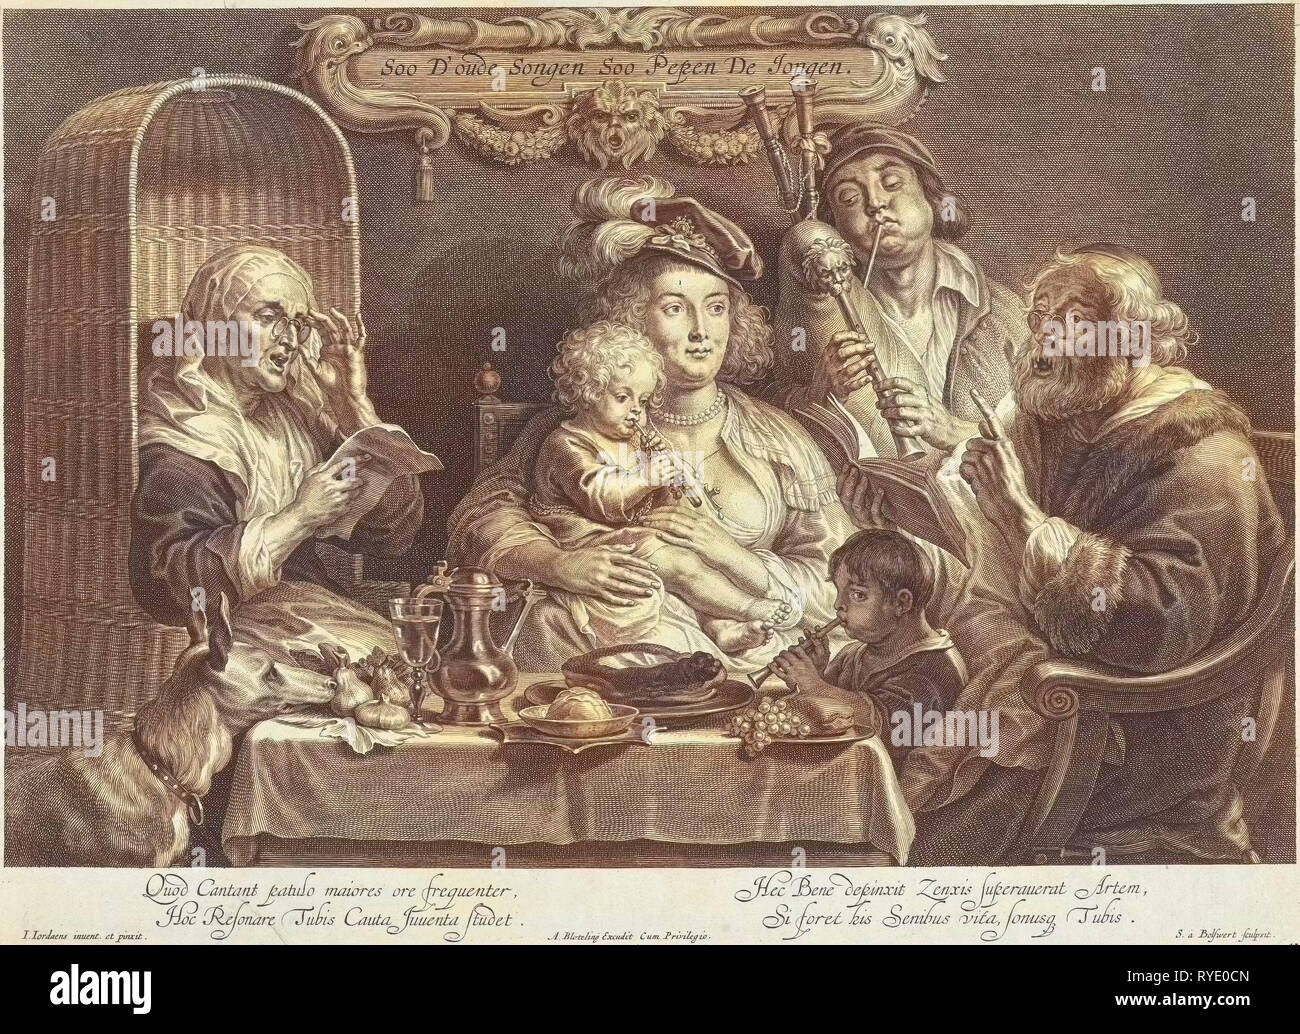 Eine Mutter sitzt mit einem kleinen Kind spielen Flöte auf ihrem Schoß auf einem gedeckten Tisch, neben ihrer Blasen ihren Mann mit dicken Backen auf einem dudelsack und ein kleiner Junge spielt eine Flöte, während sein Großvater und Großmutter, beide mit Gläsern, Singen, drucken Teekocher: Schelte Adamsz. Bolswert (auf Objekt erwähnt), 1638 - 1659 Stockfoto